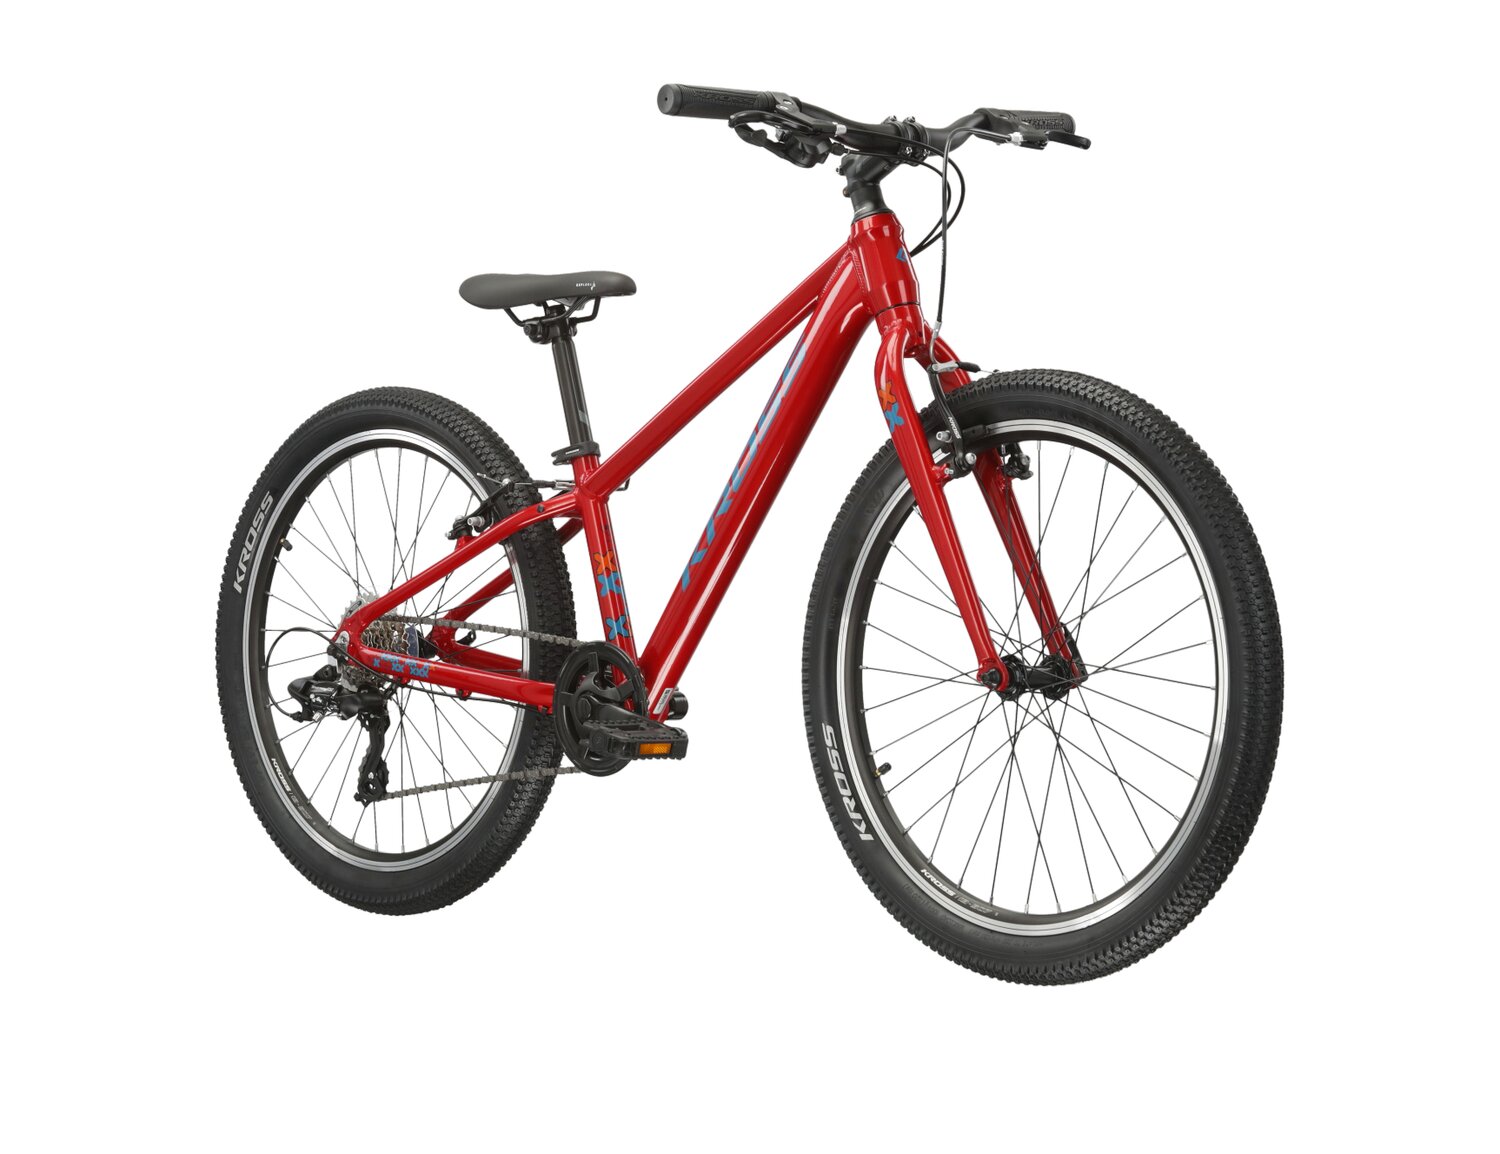  Juniorski rower MTB KROSS Level JR 1.0 na kołach 24 cale w kolorze czerwonym 